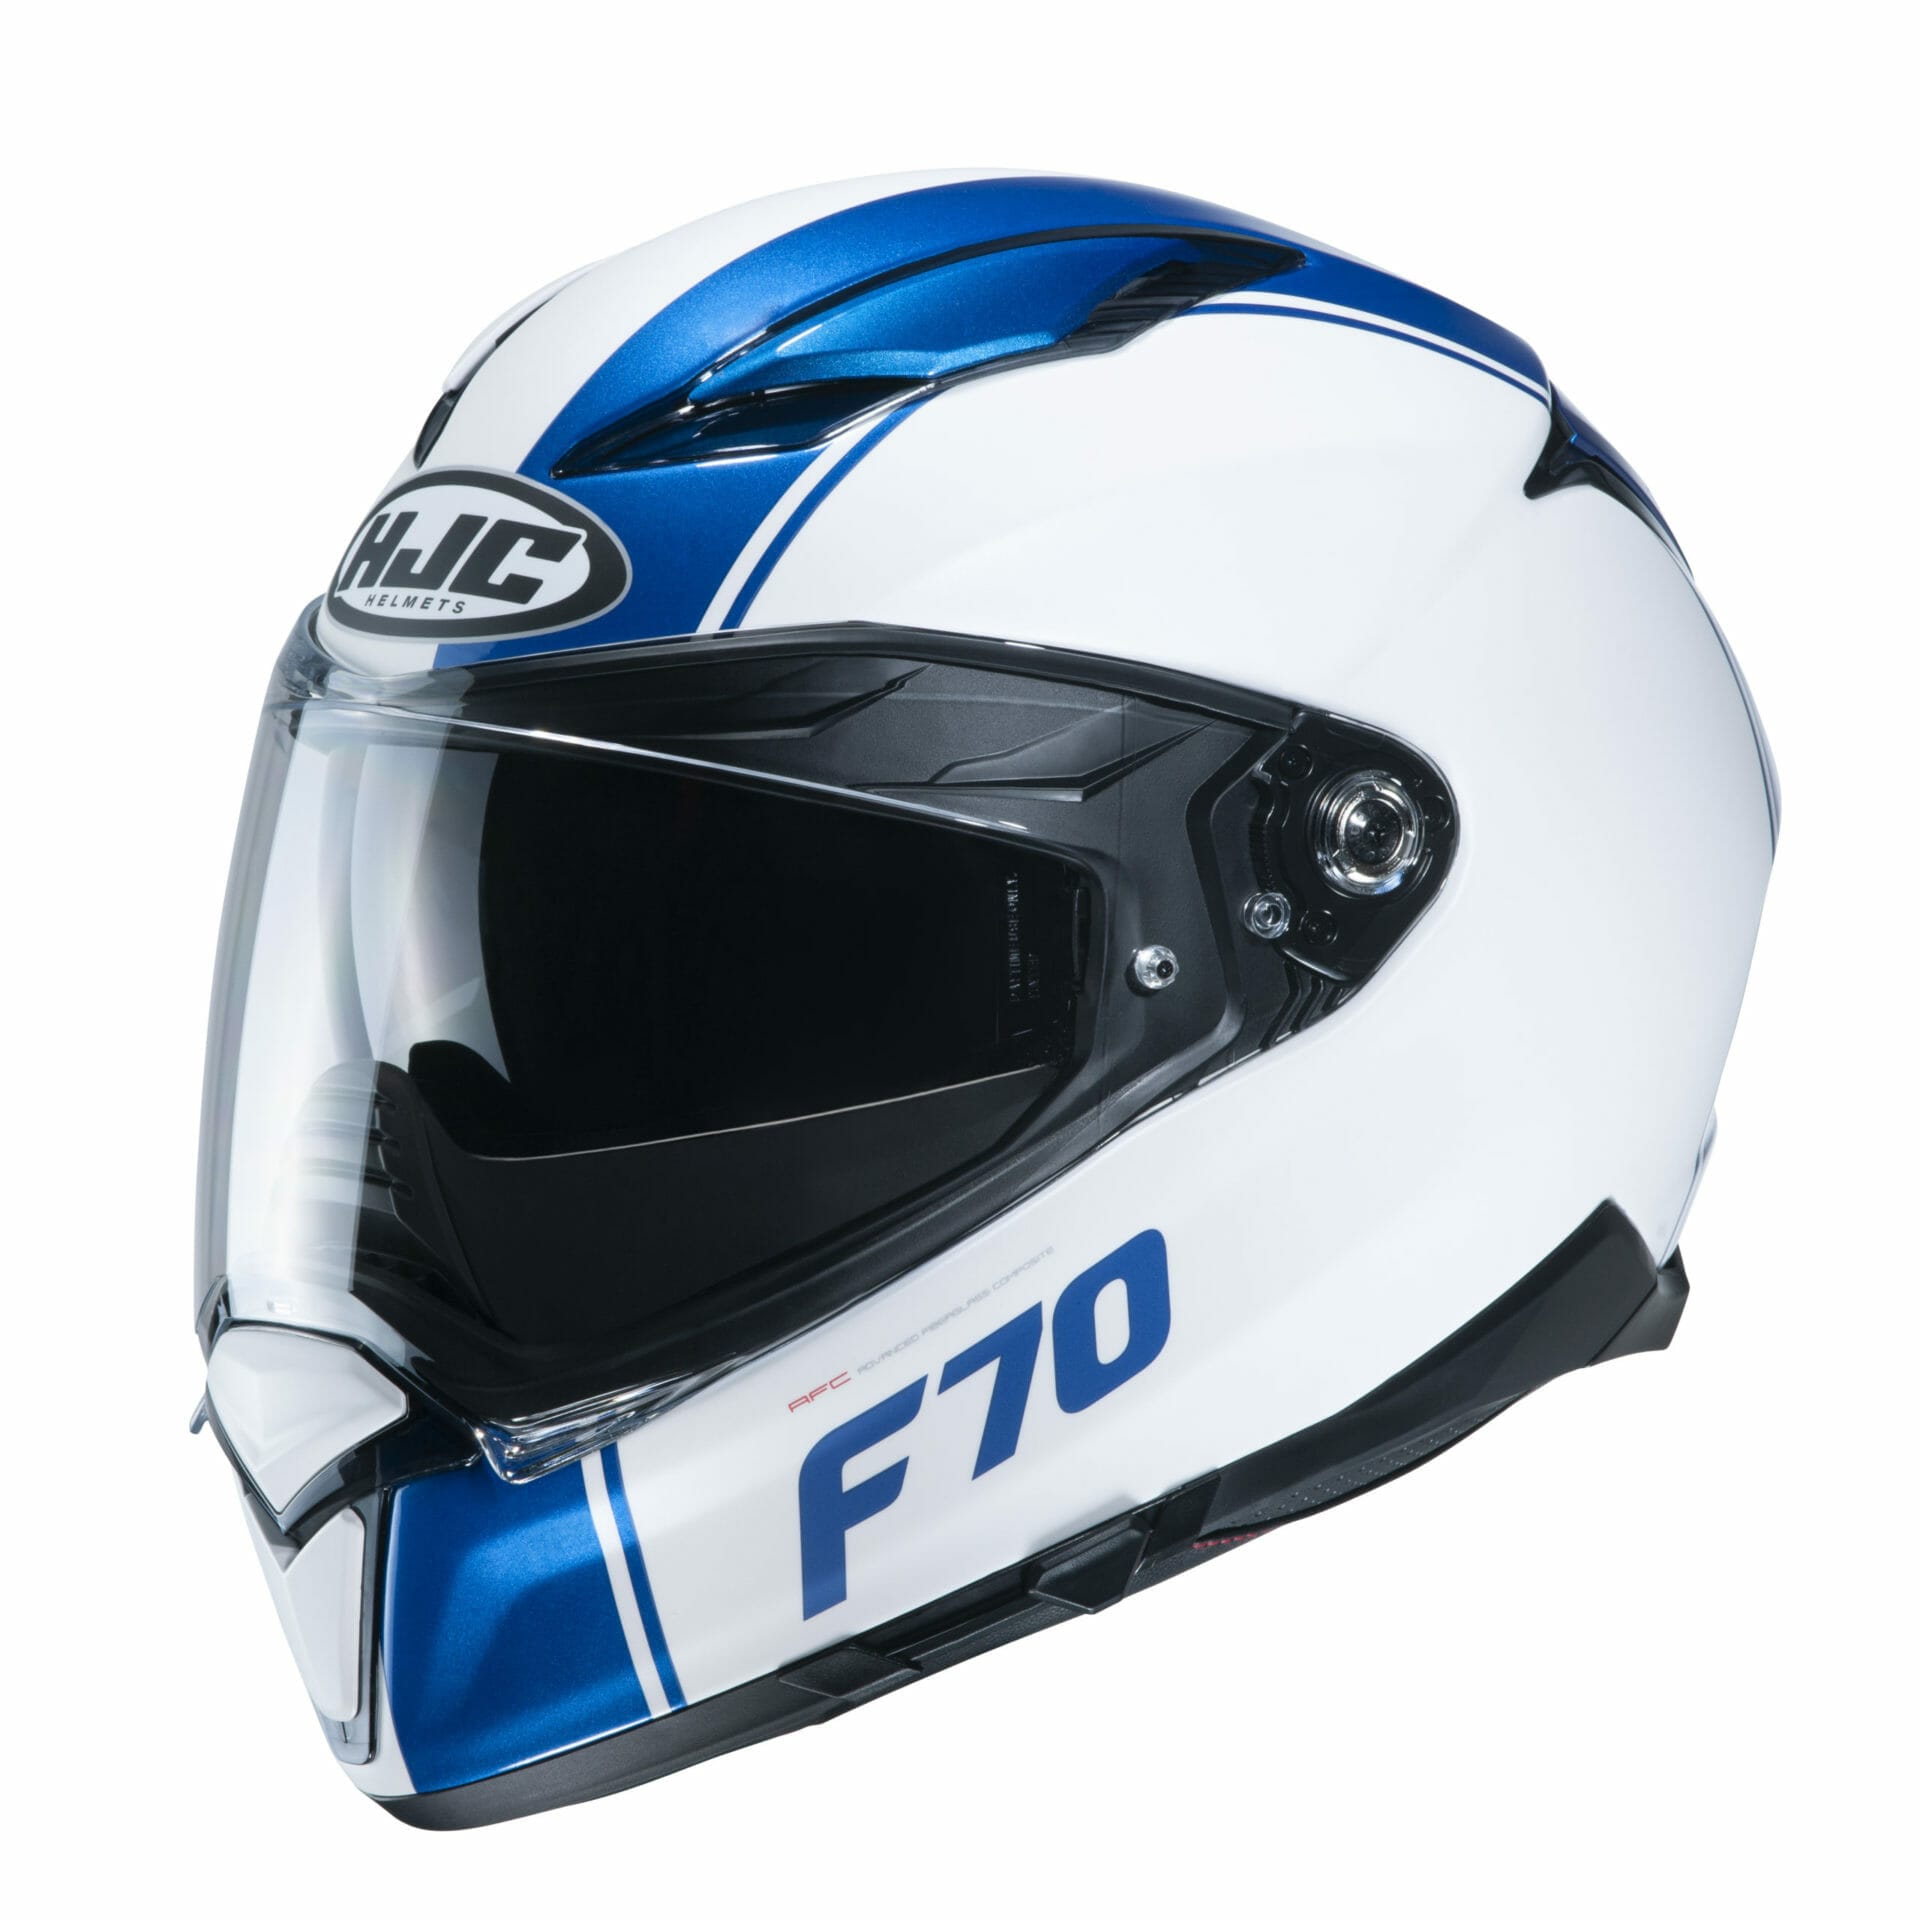 #HJC #F70 - Neuer Sport-Touring-Helm
- auch in der Motorrad Nachrichten App